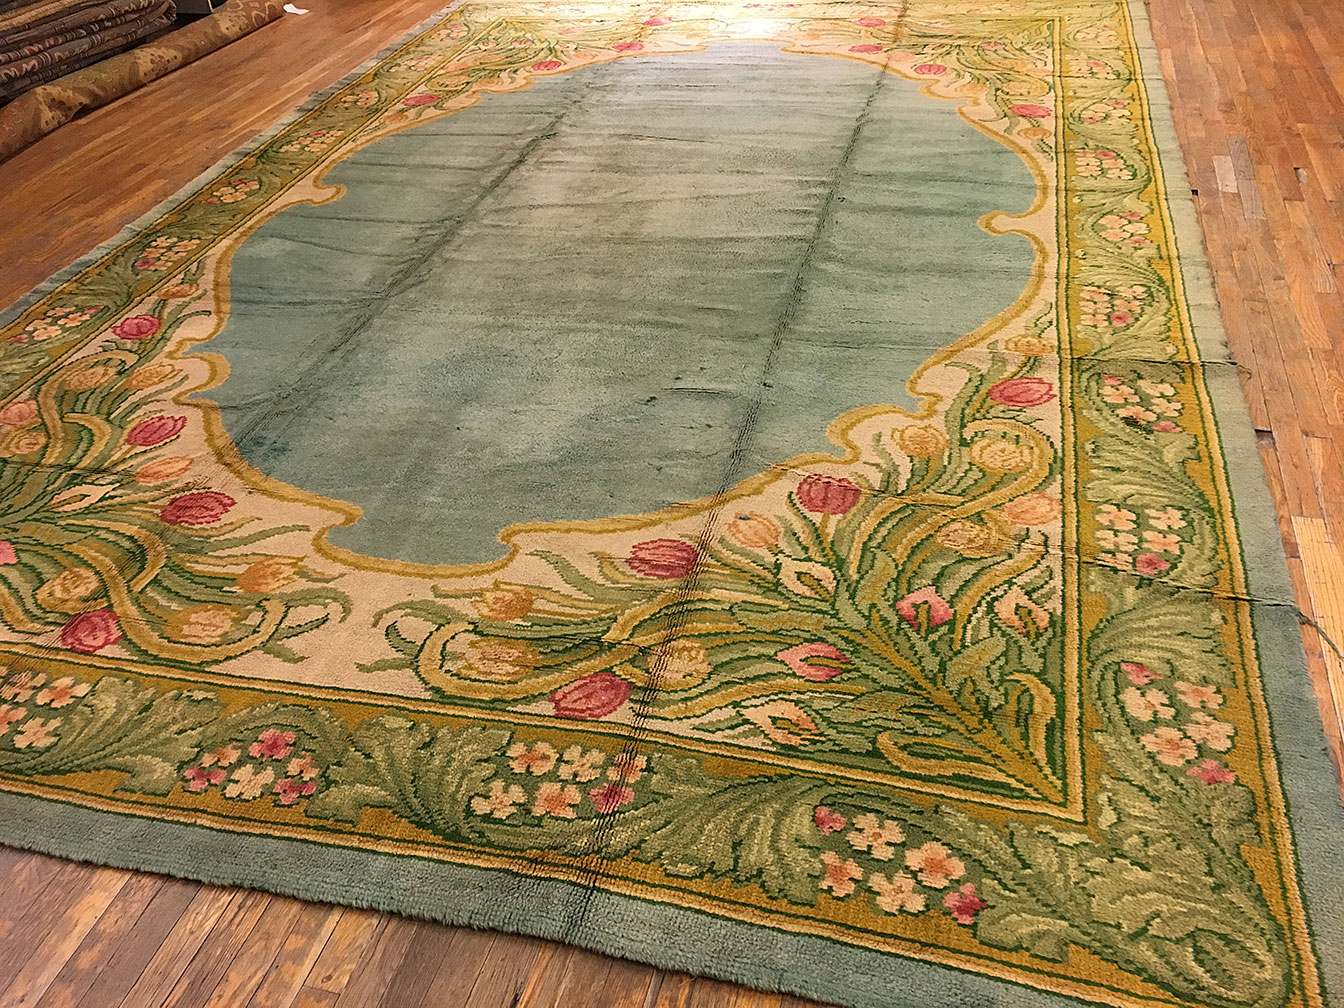 Antique donegal Carpet - # 52941